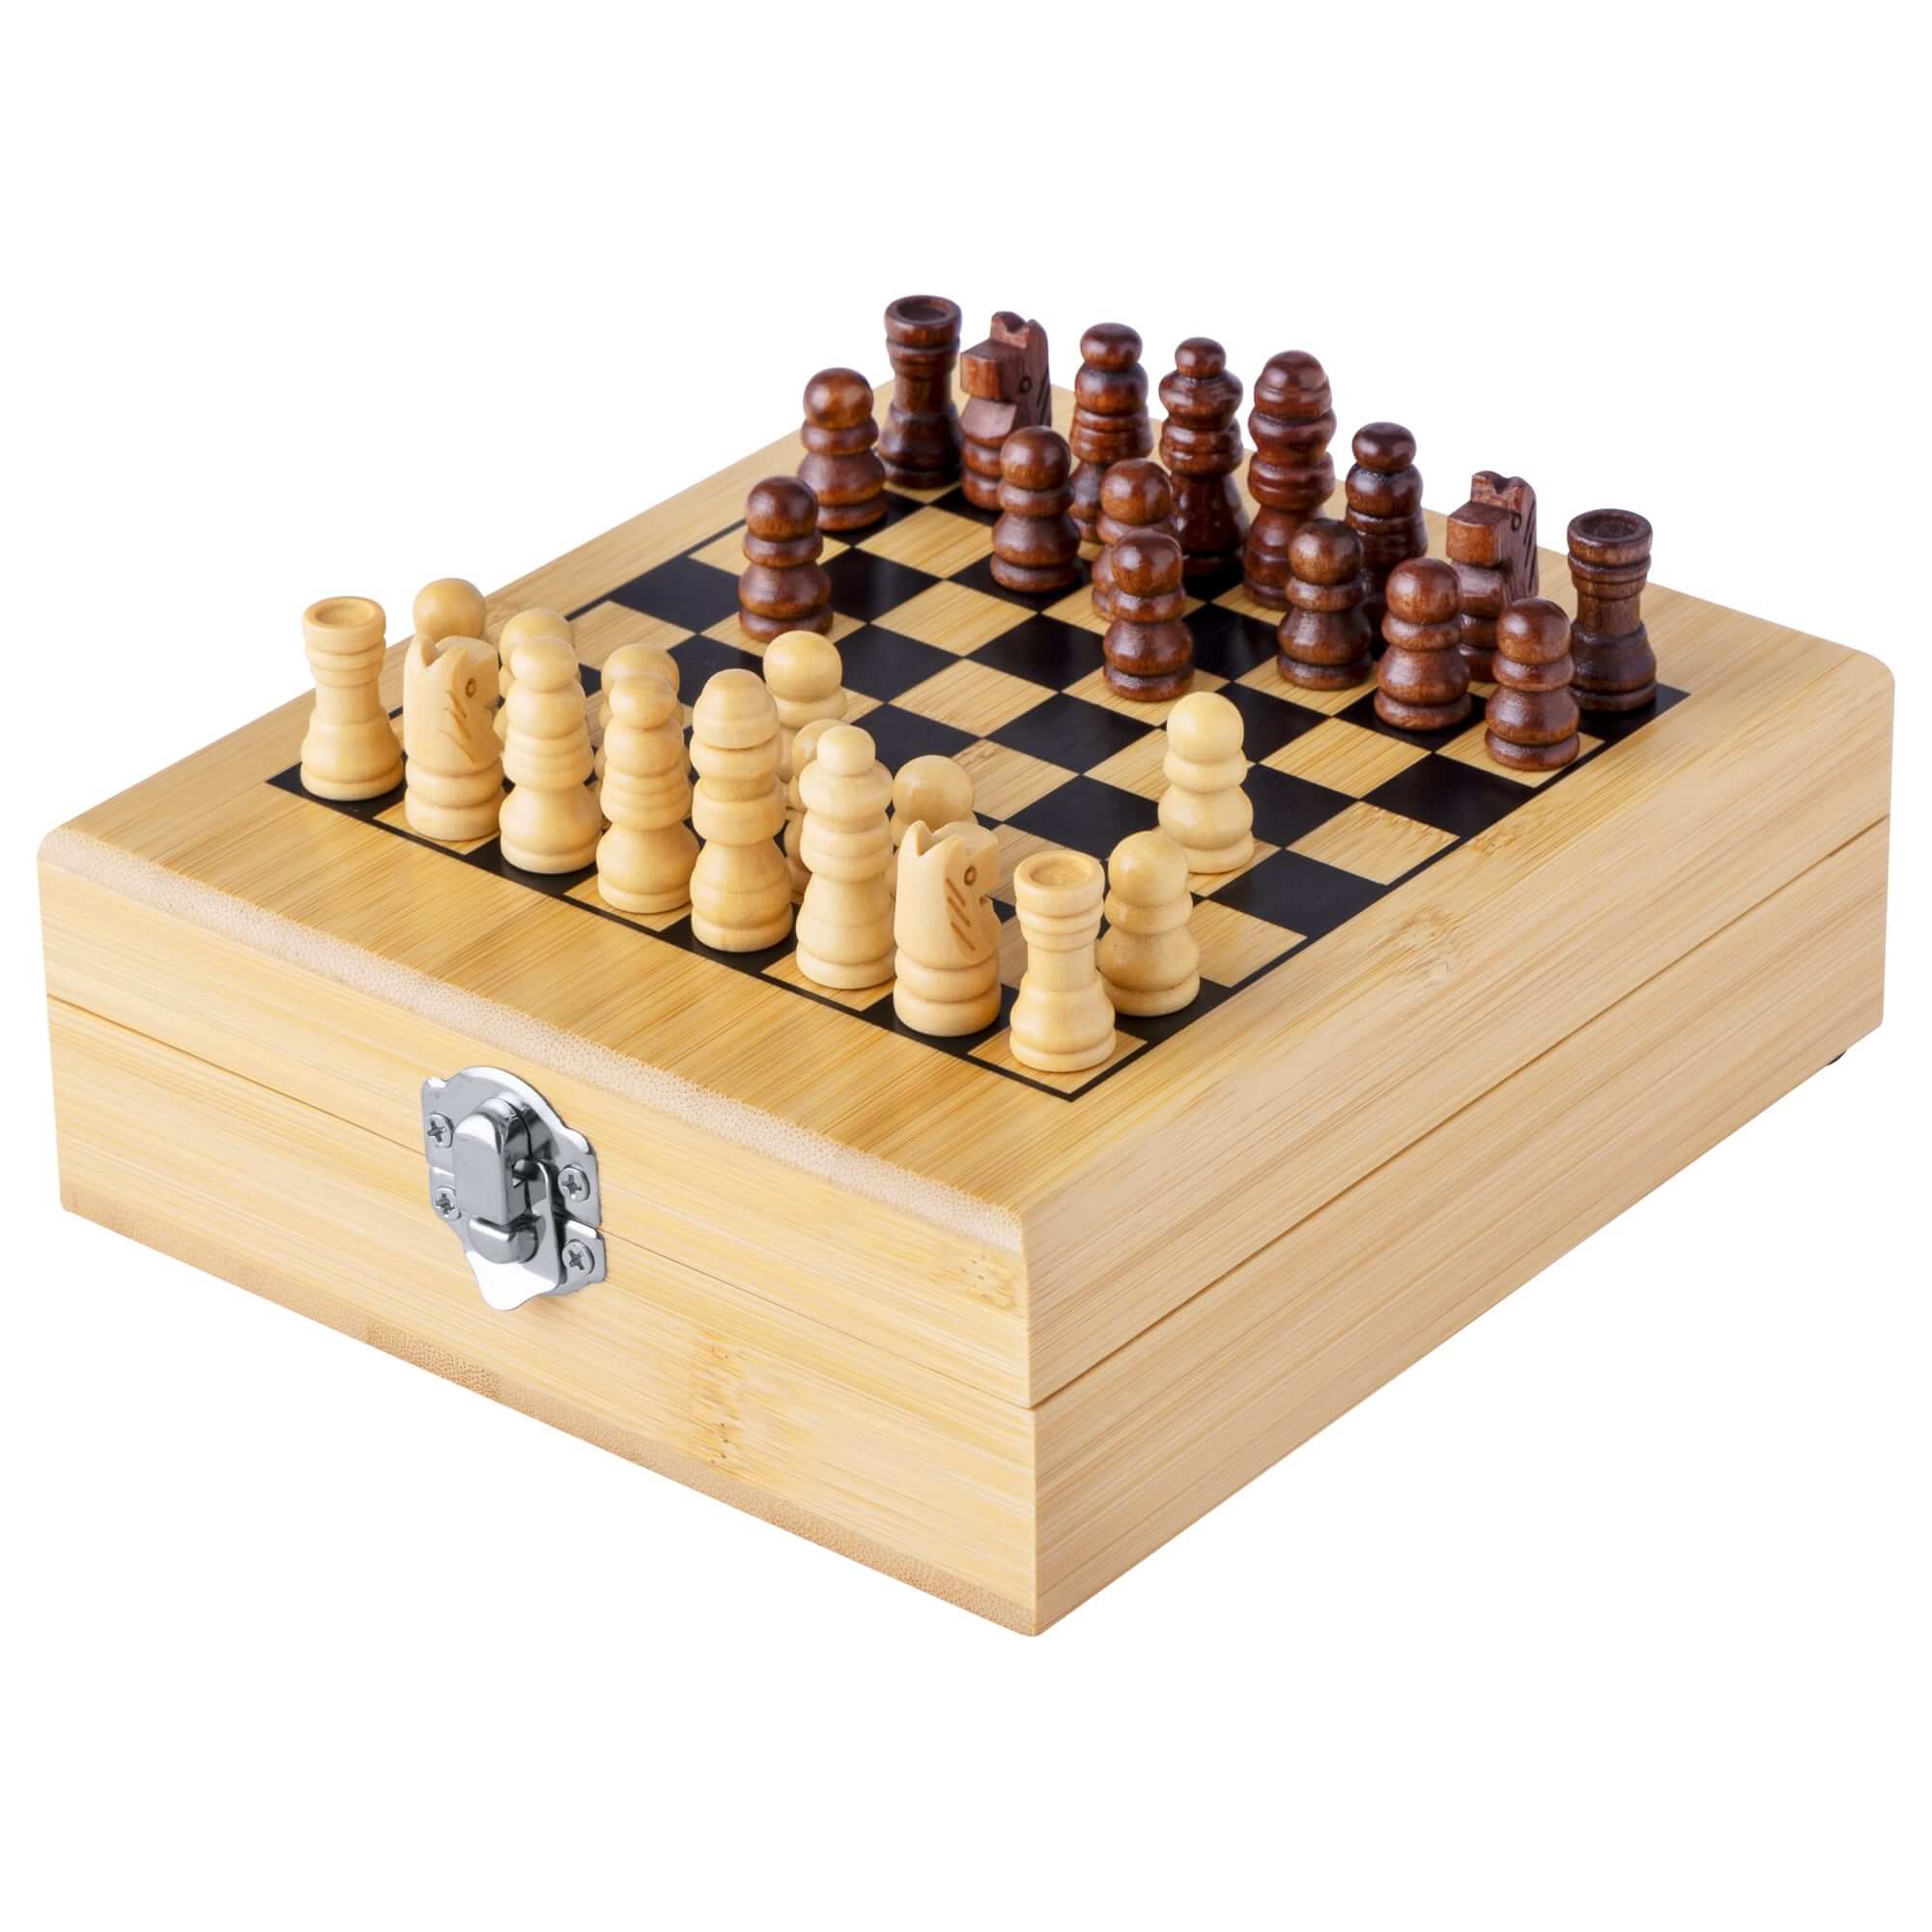 Weinset 4-teilig in Bambusbox 148×168×52mm mit Schachbrett und 32 Schachfiguren. Das Set beinhaltet: Korkenzieher, Tropfring, Ausgießer und Flaschenverschluss